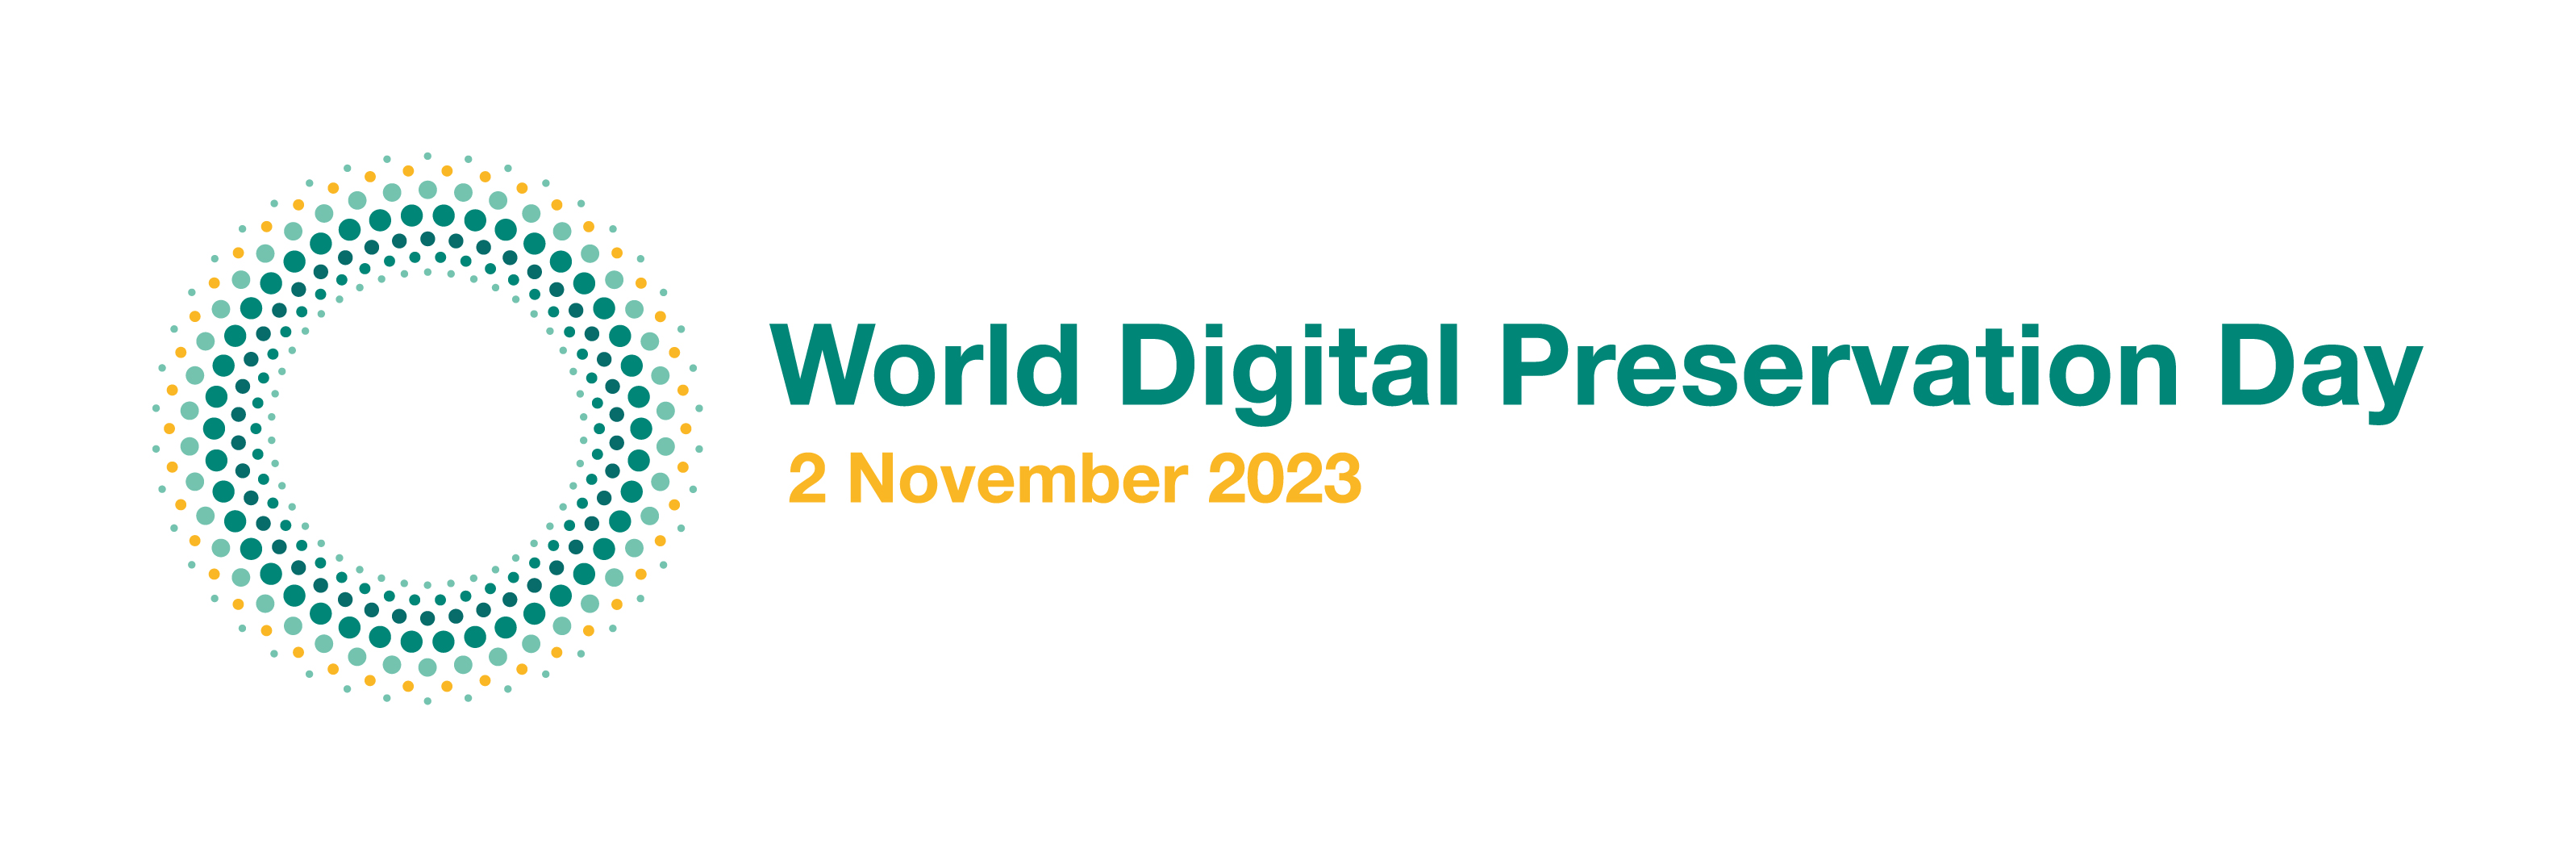 World Digital Preservation Day - 2 November 2023